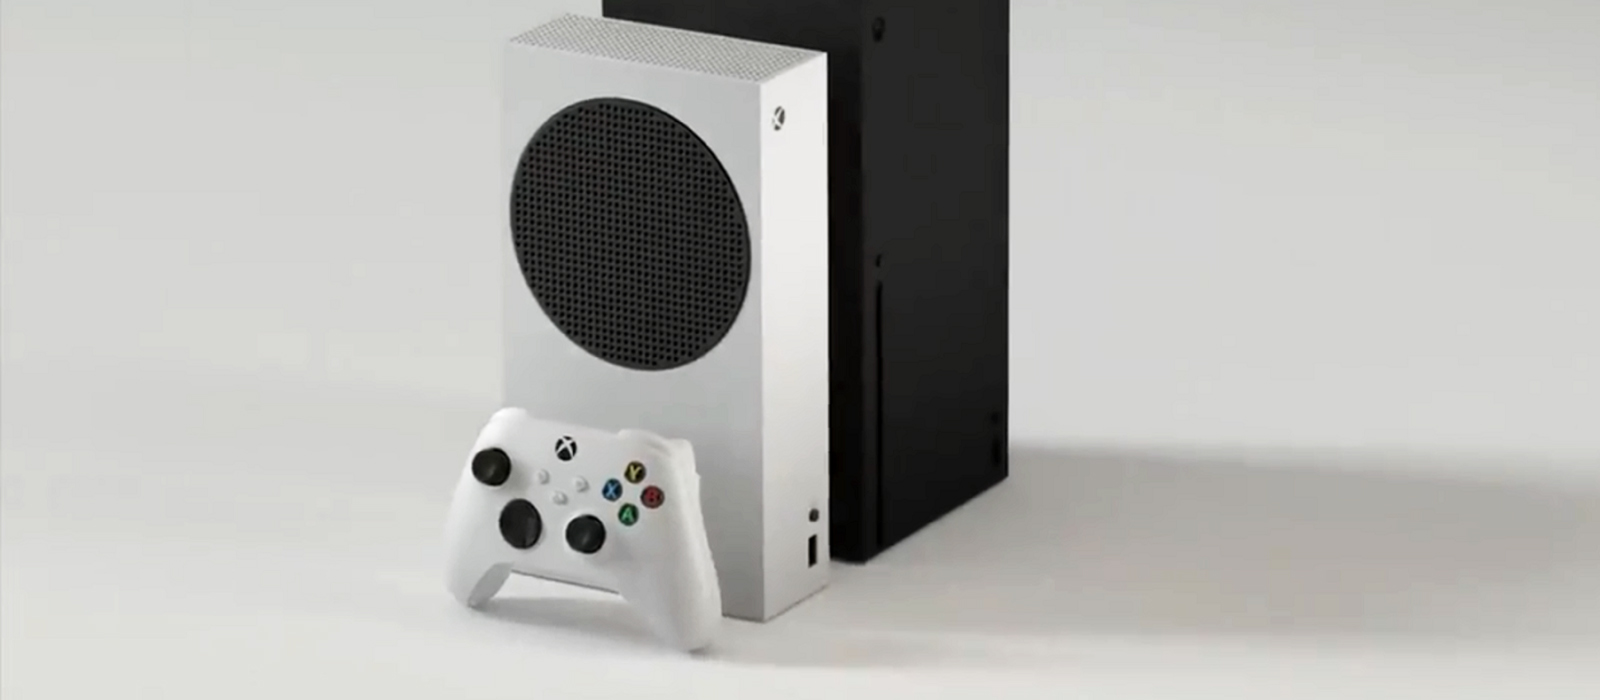 В сеть слили дизайн и цену Xbox Series S. Microsoft уже отреагировала на это (обновлено)